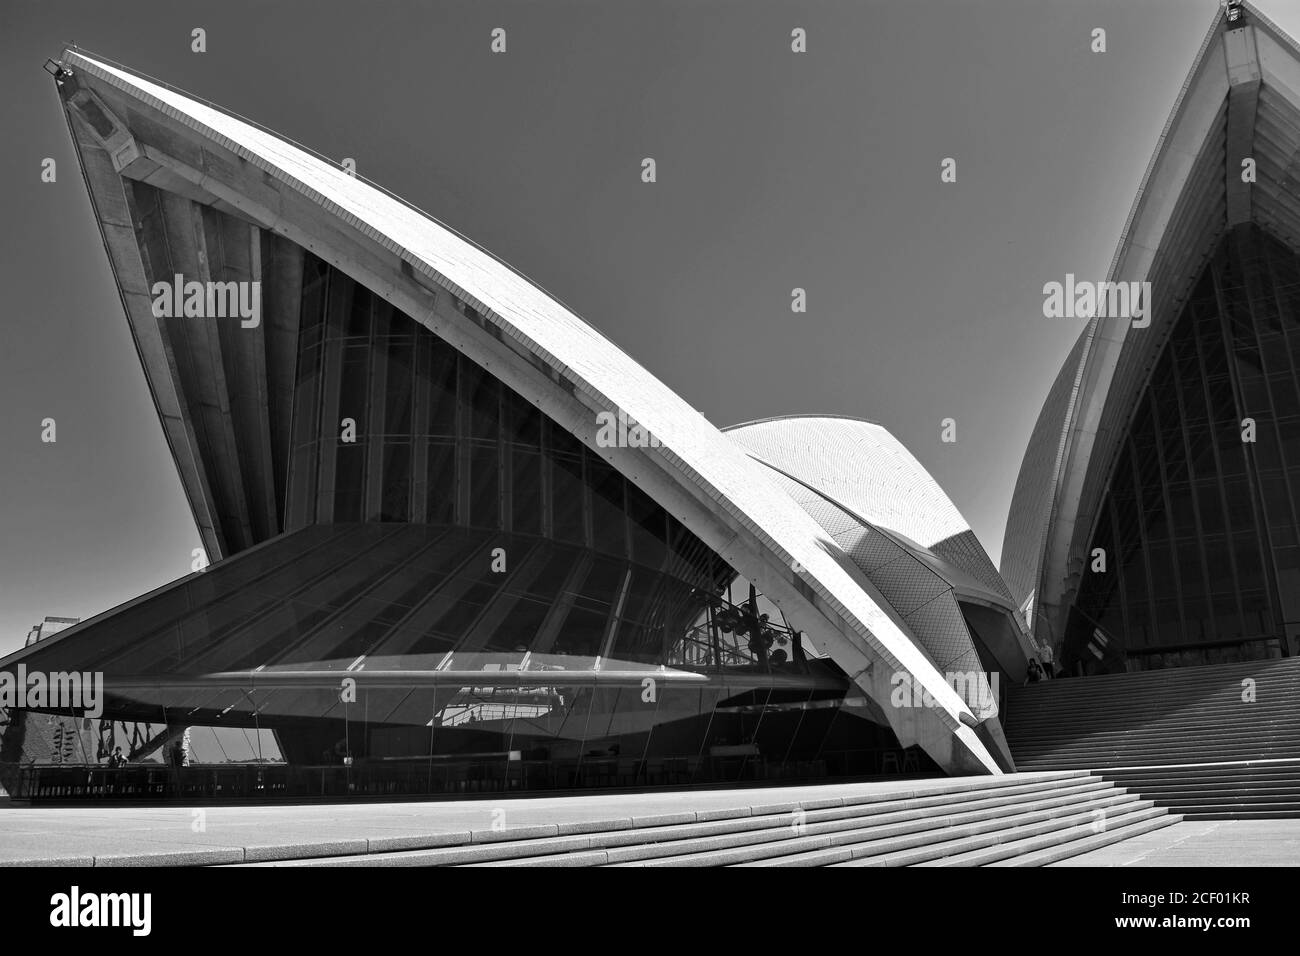 Ein abstraktes Schwarz-Weiß-Bild des Opernhauses von Sydney.die Winkel der Dachlinie und die Glasarchitektur erheben sich gegen einen klaren, grauen Himmel. Australien Stockfoto